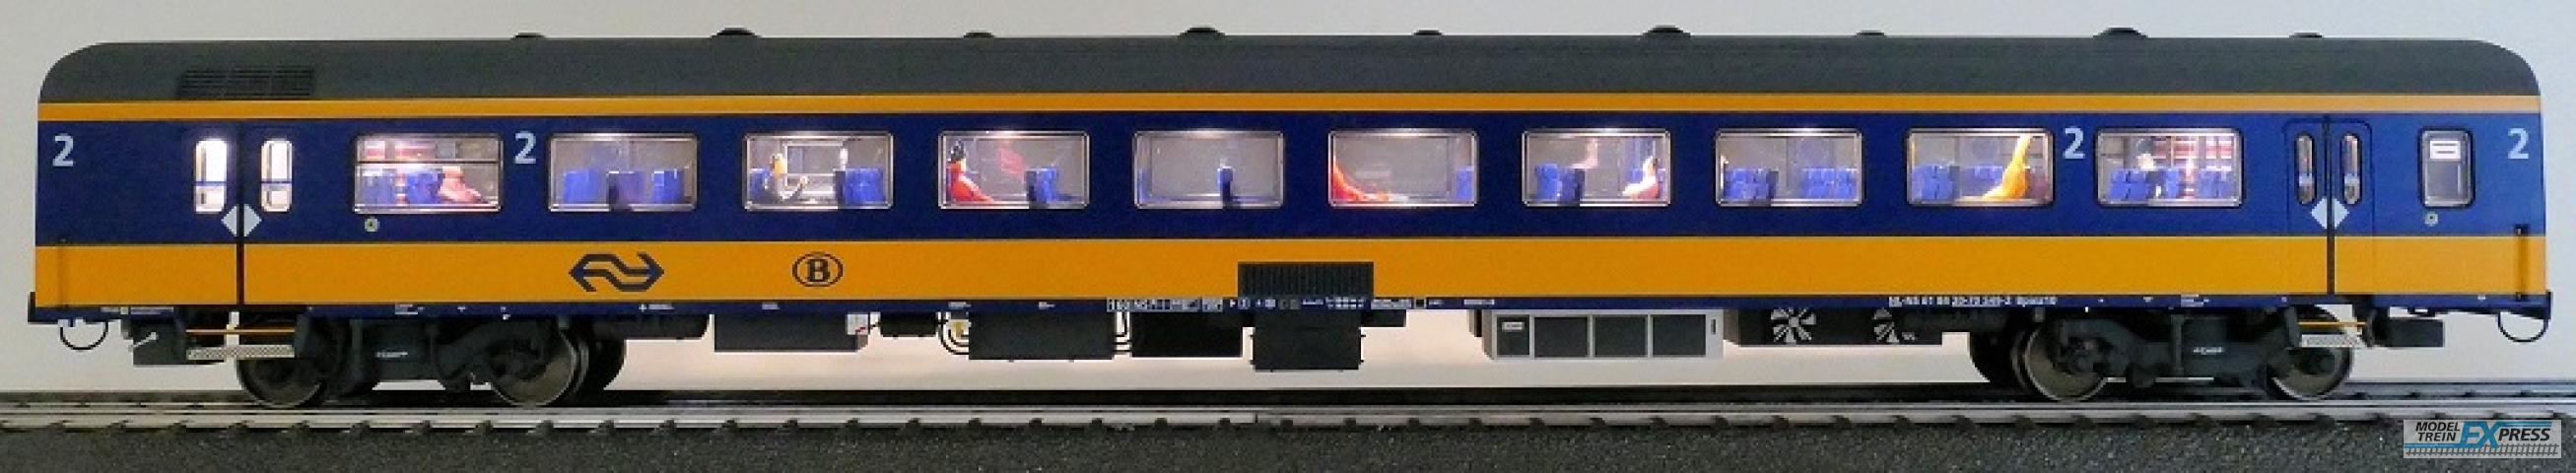 Exact-train 11158 NS ICRm (Amsterdam - Brussel) Reisezugwagen Bpmz10 ( Farbe Gelb / Blau) mit Beleuchtung und Figuren, Ep. VI